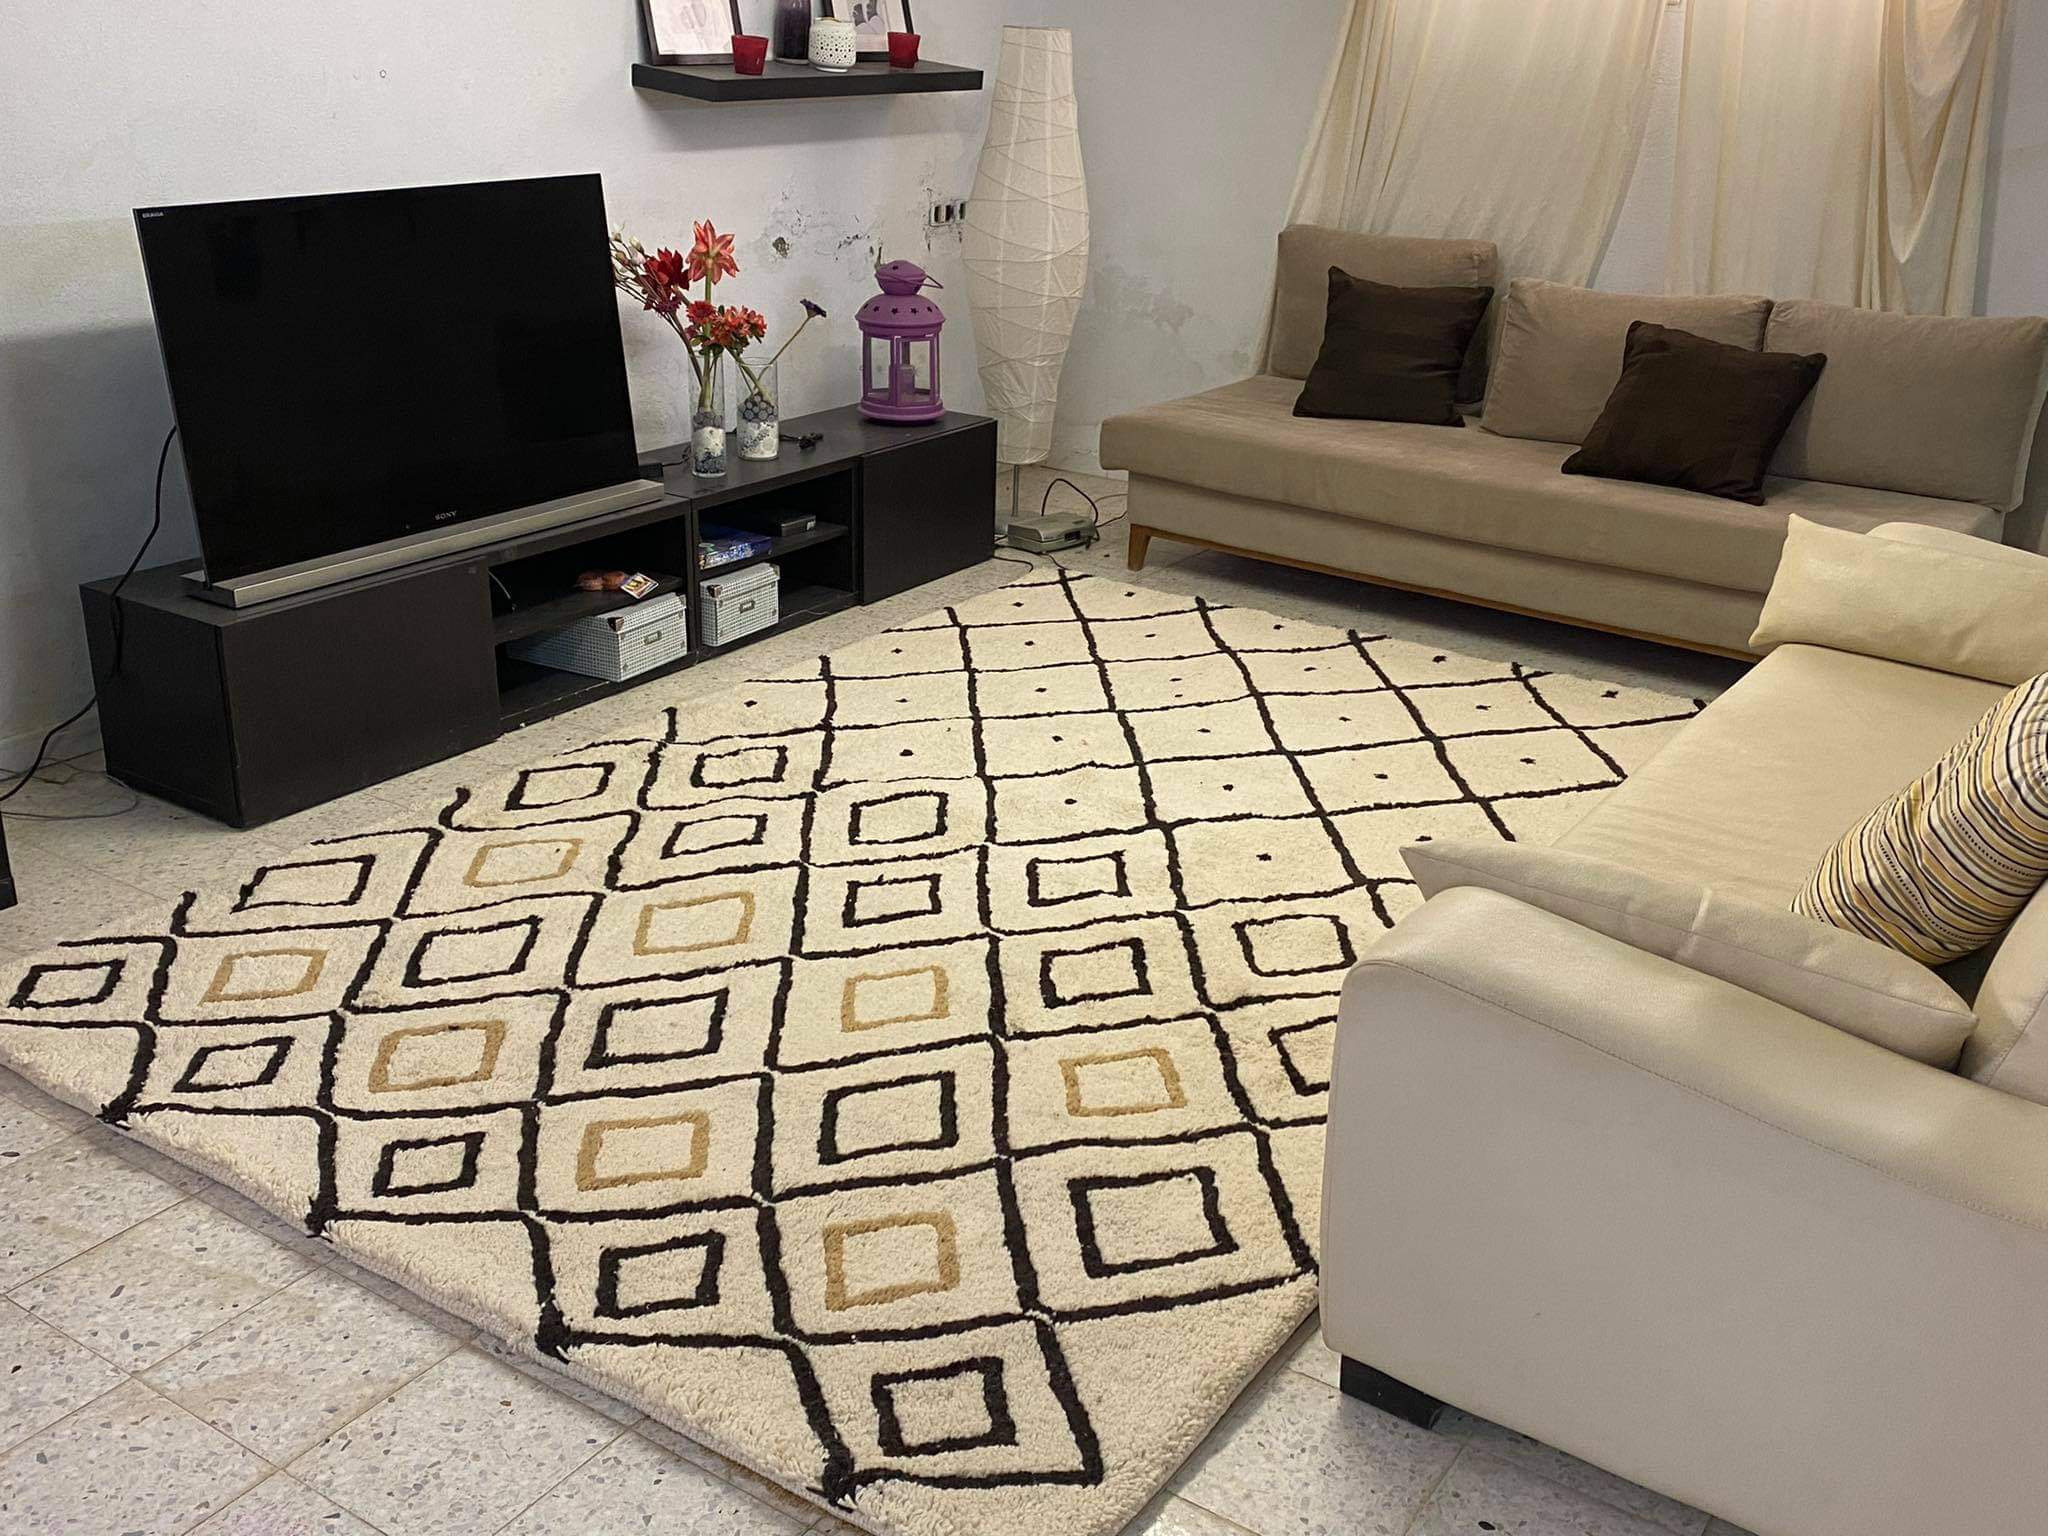 Grand tapis beige pour un salon chaleureux